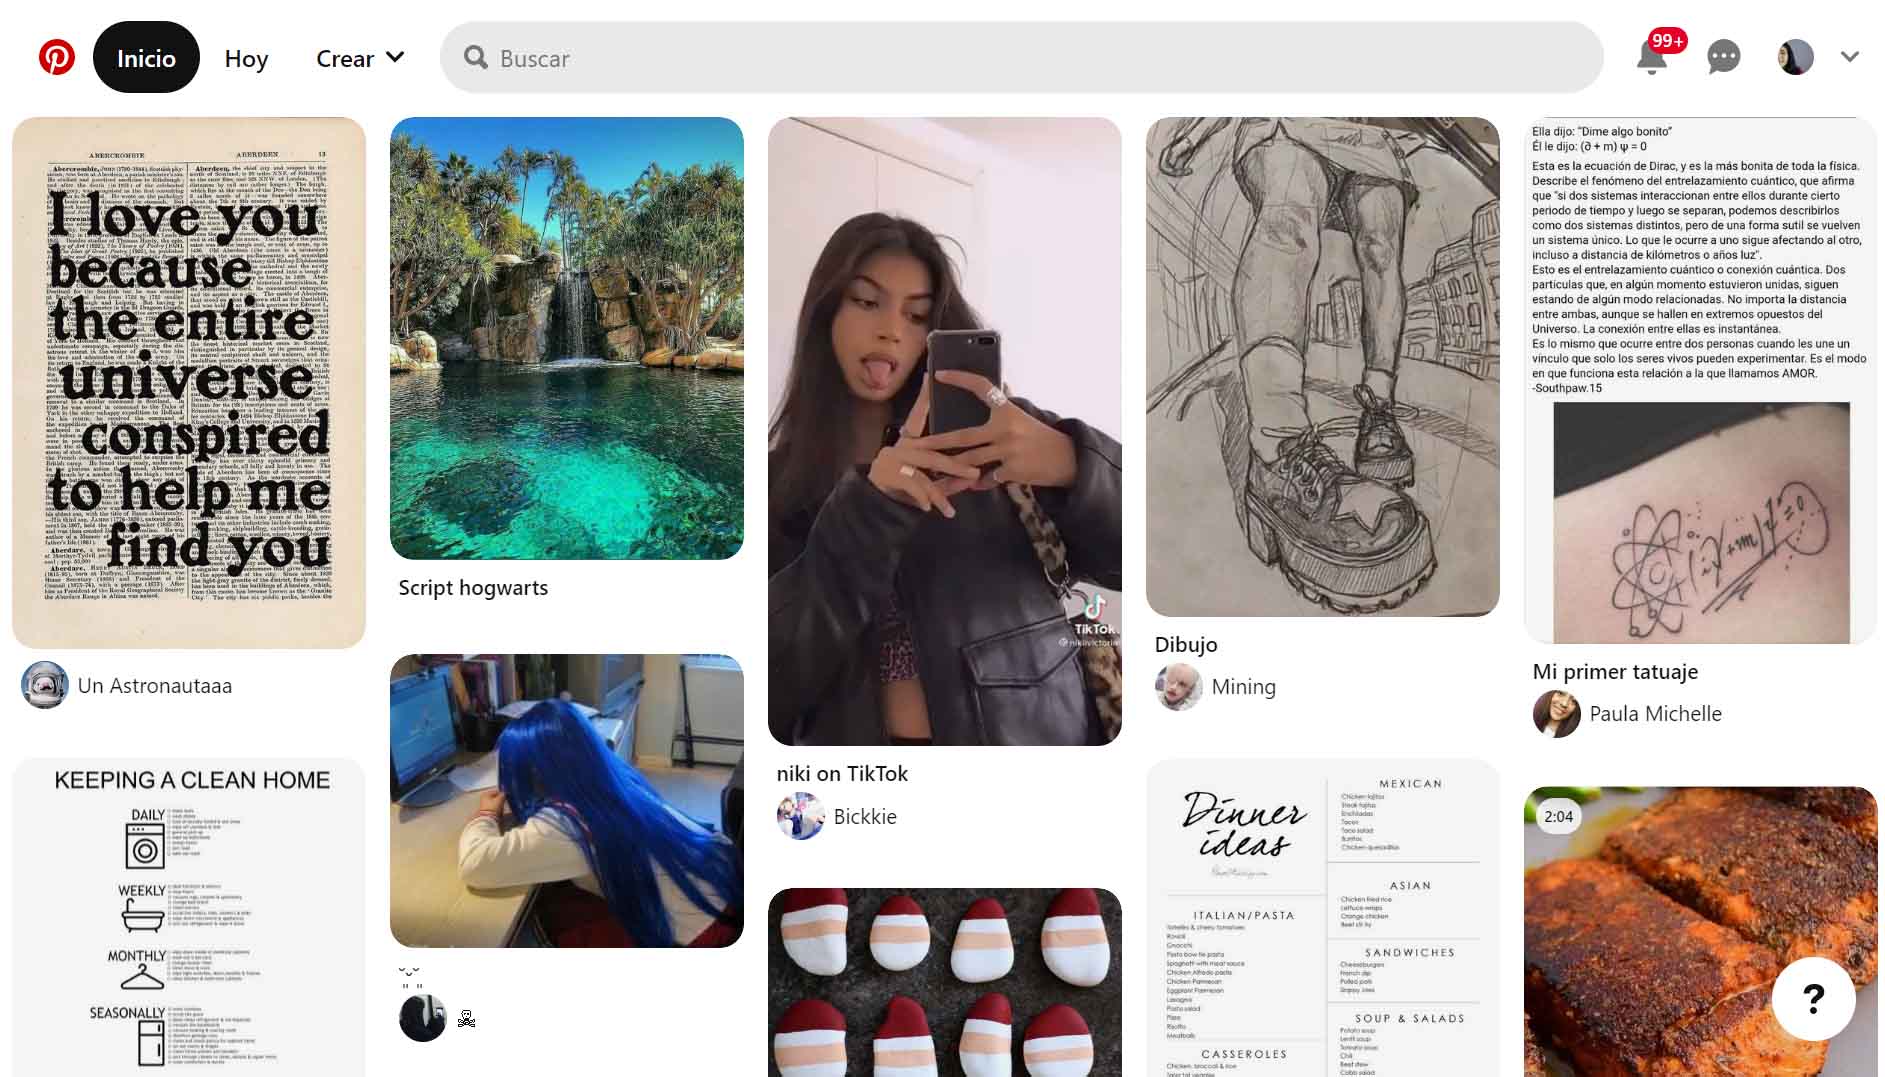 personalización de sitios web - ejemplo de Instagram